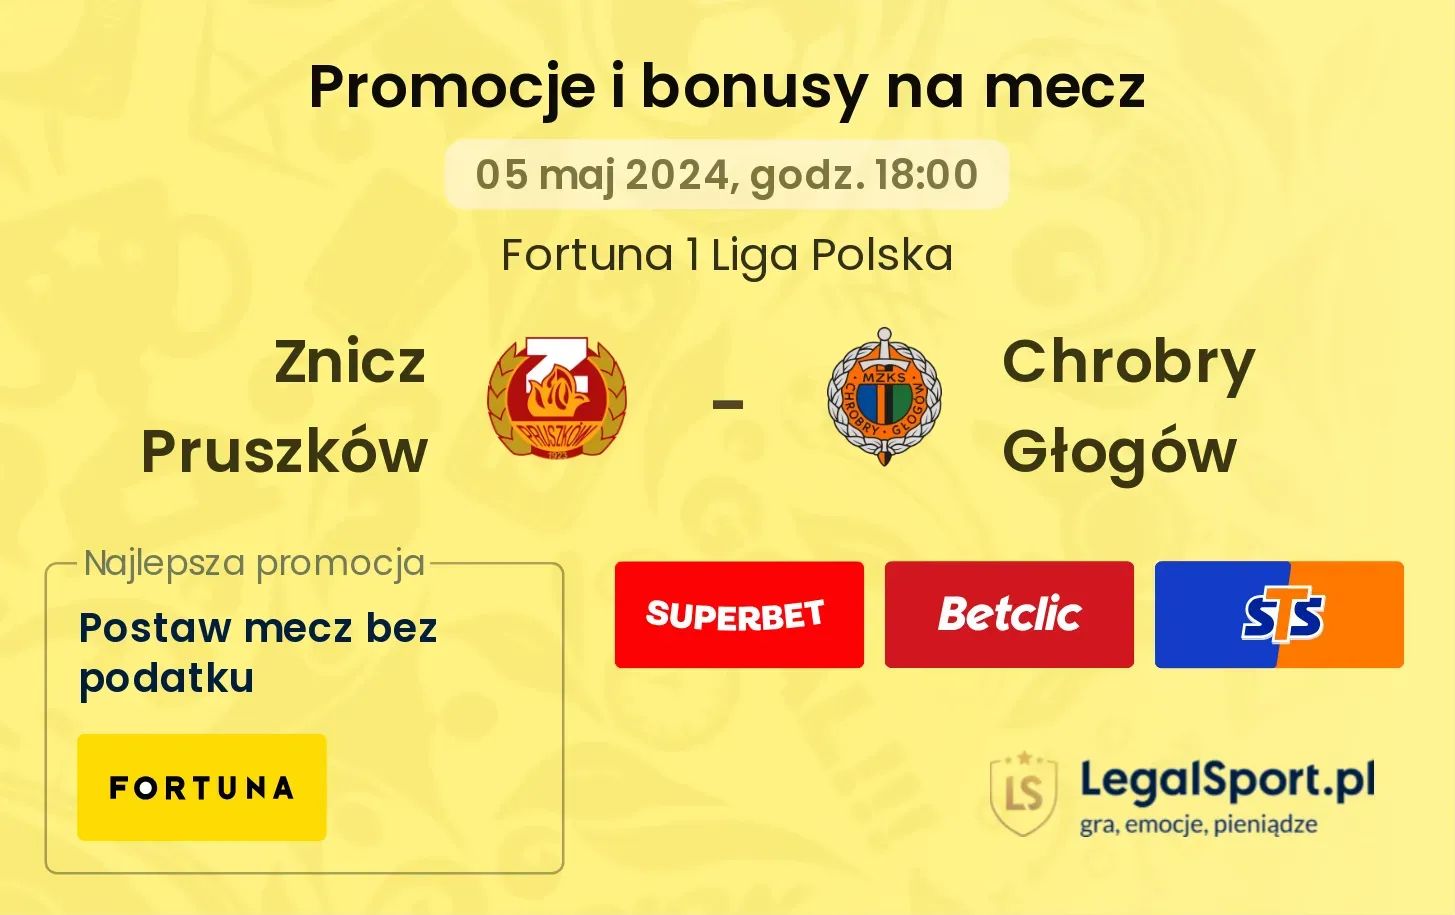 Znicz Pruszków - Chrobry Głogów promocje bonusy na mecz